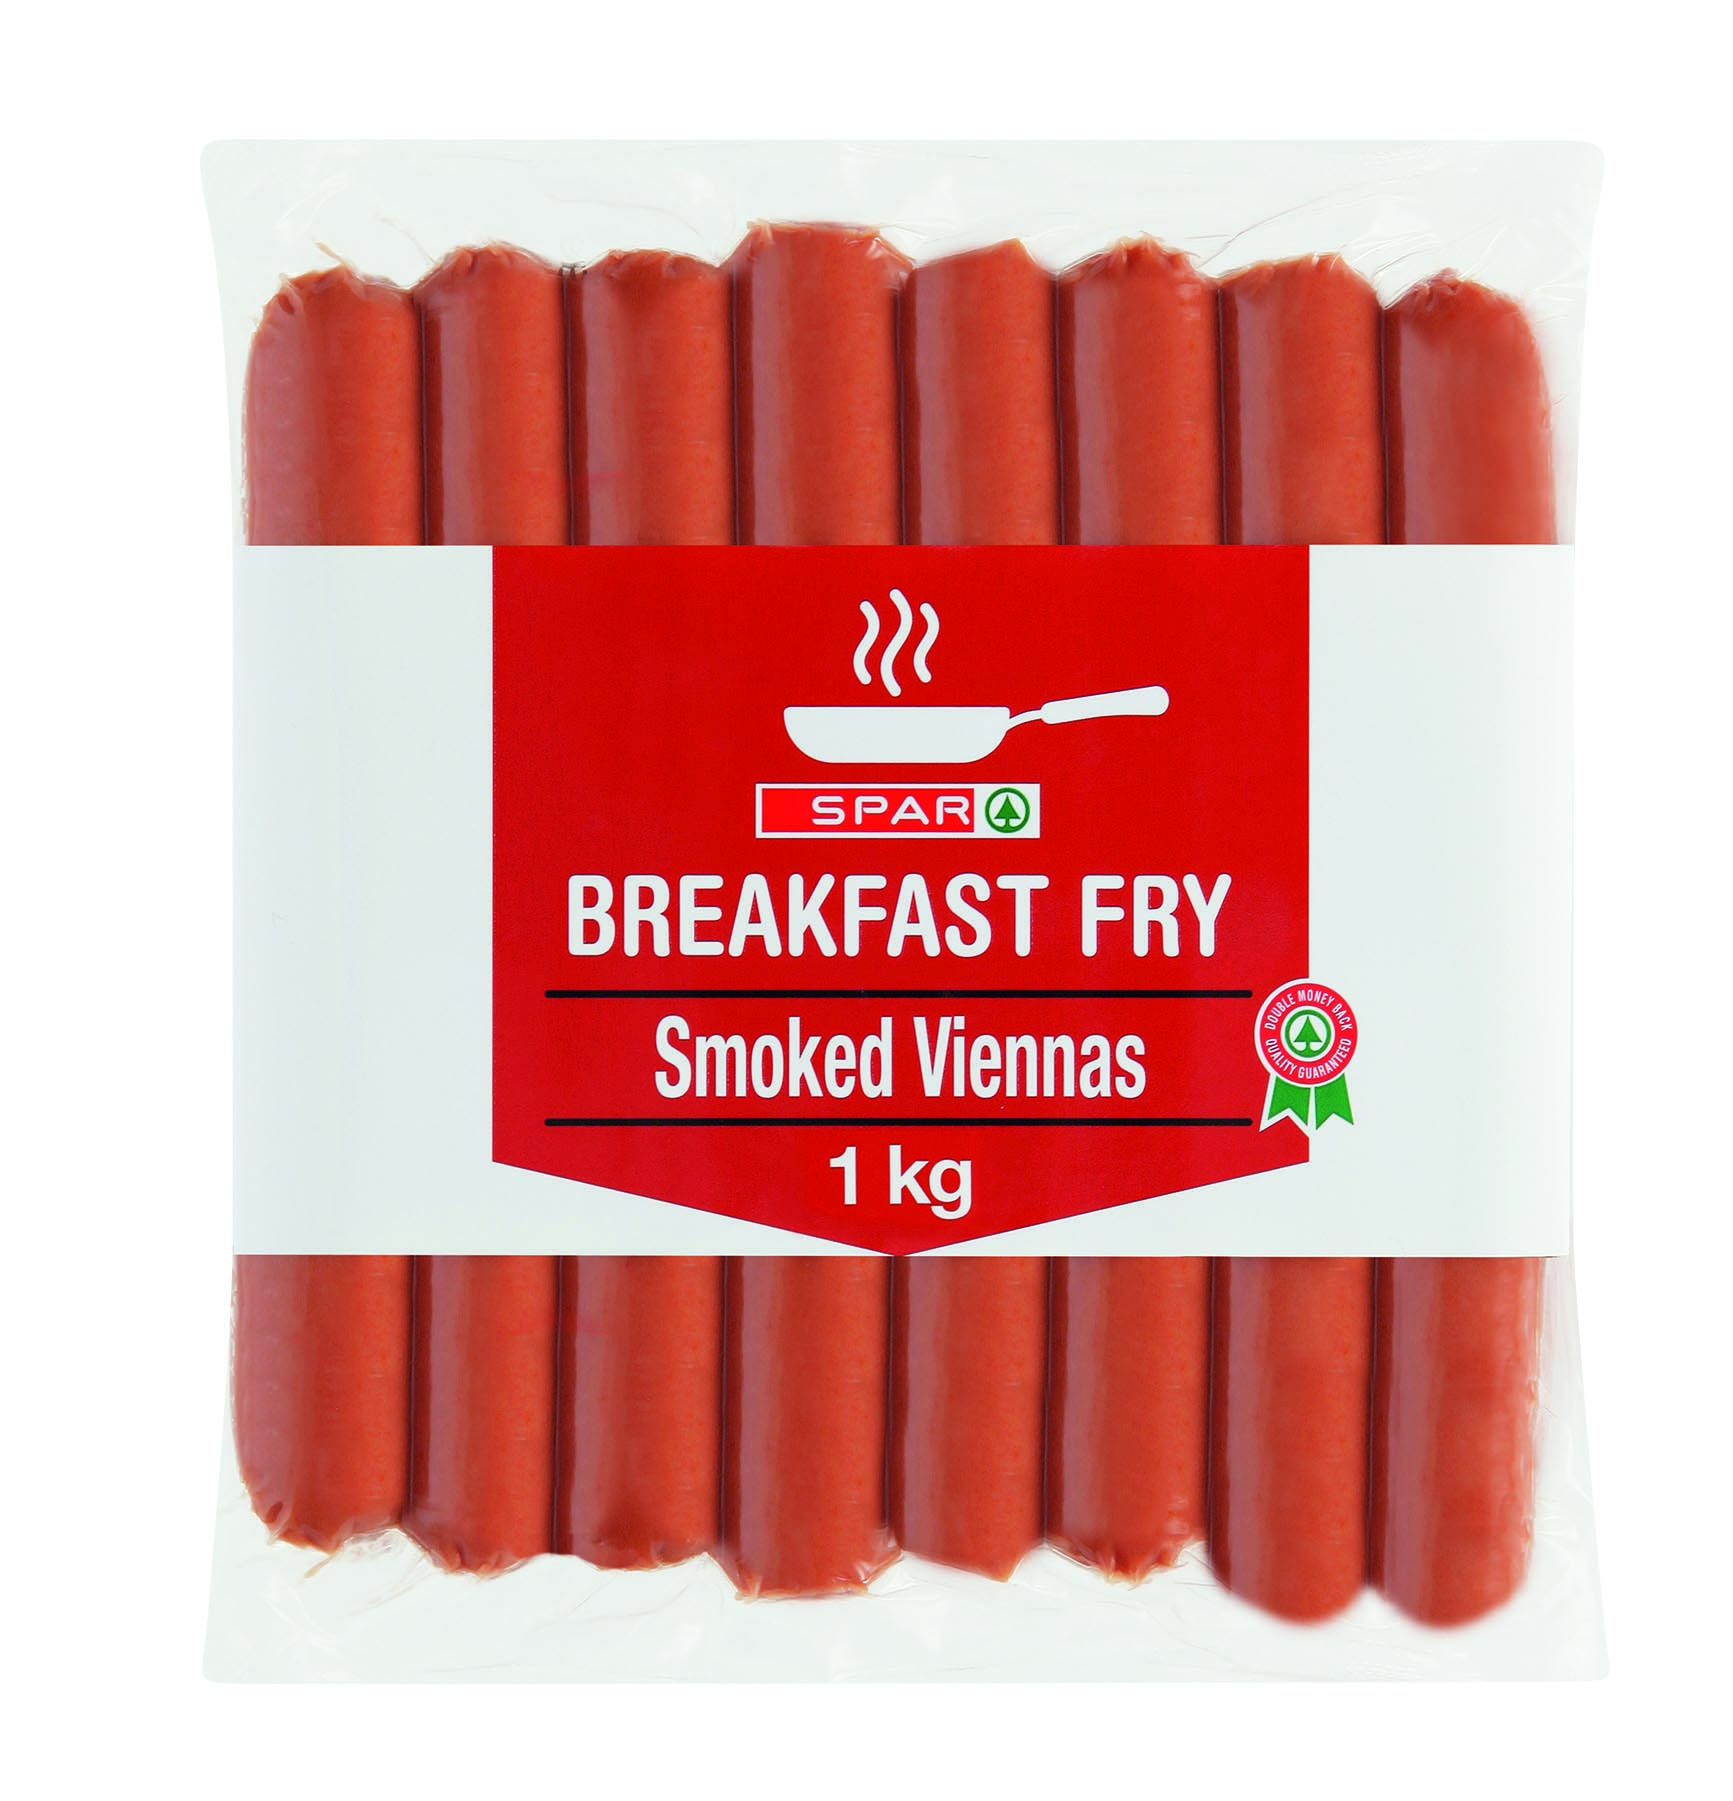 breakfast fry - smoked viennas